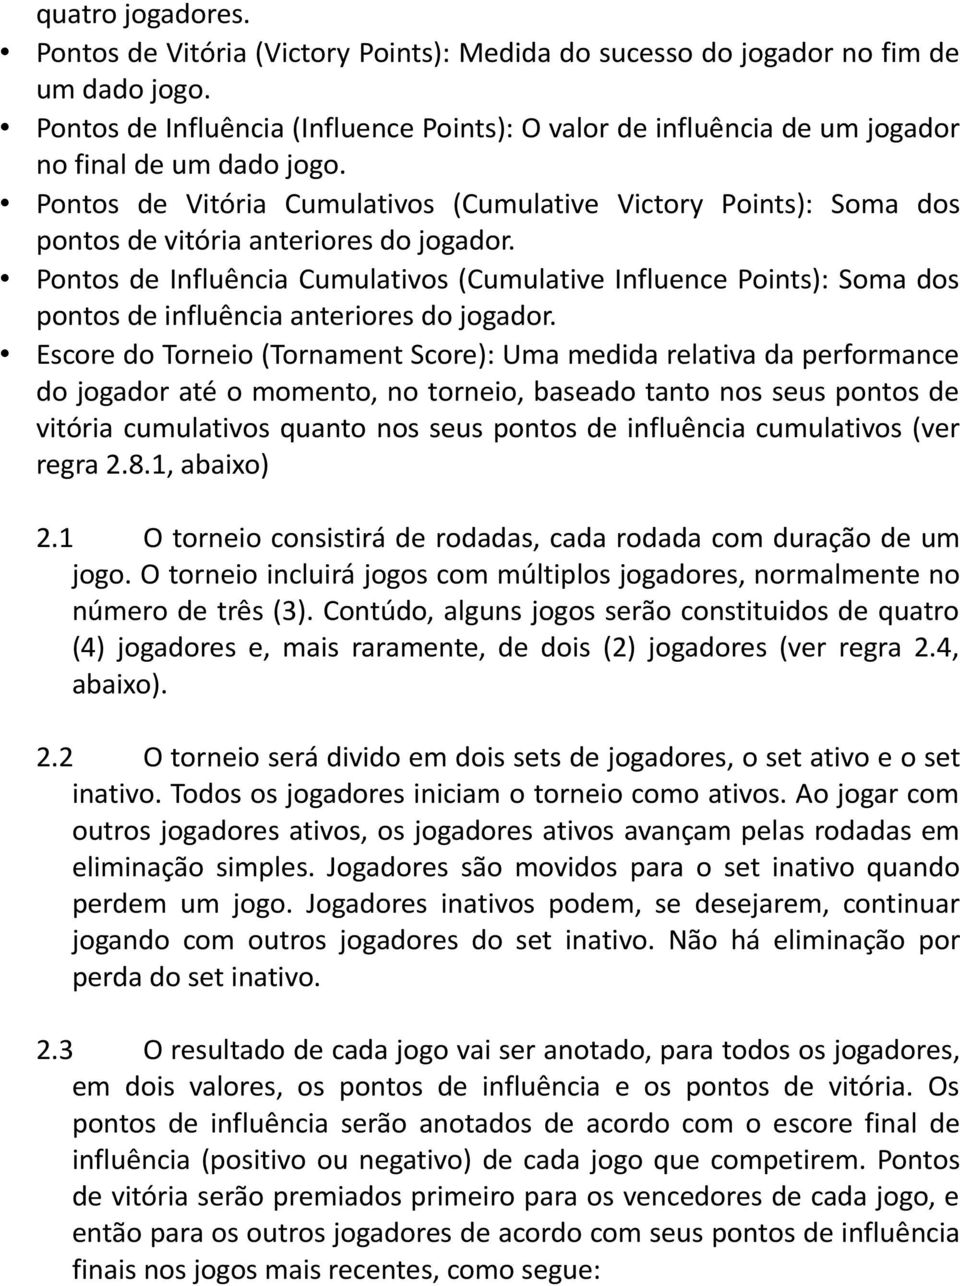 Pontos de Vitória Cumulativos (Cumulative Victory Points): Soma dos pontos de vitória anteriores do jogador.